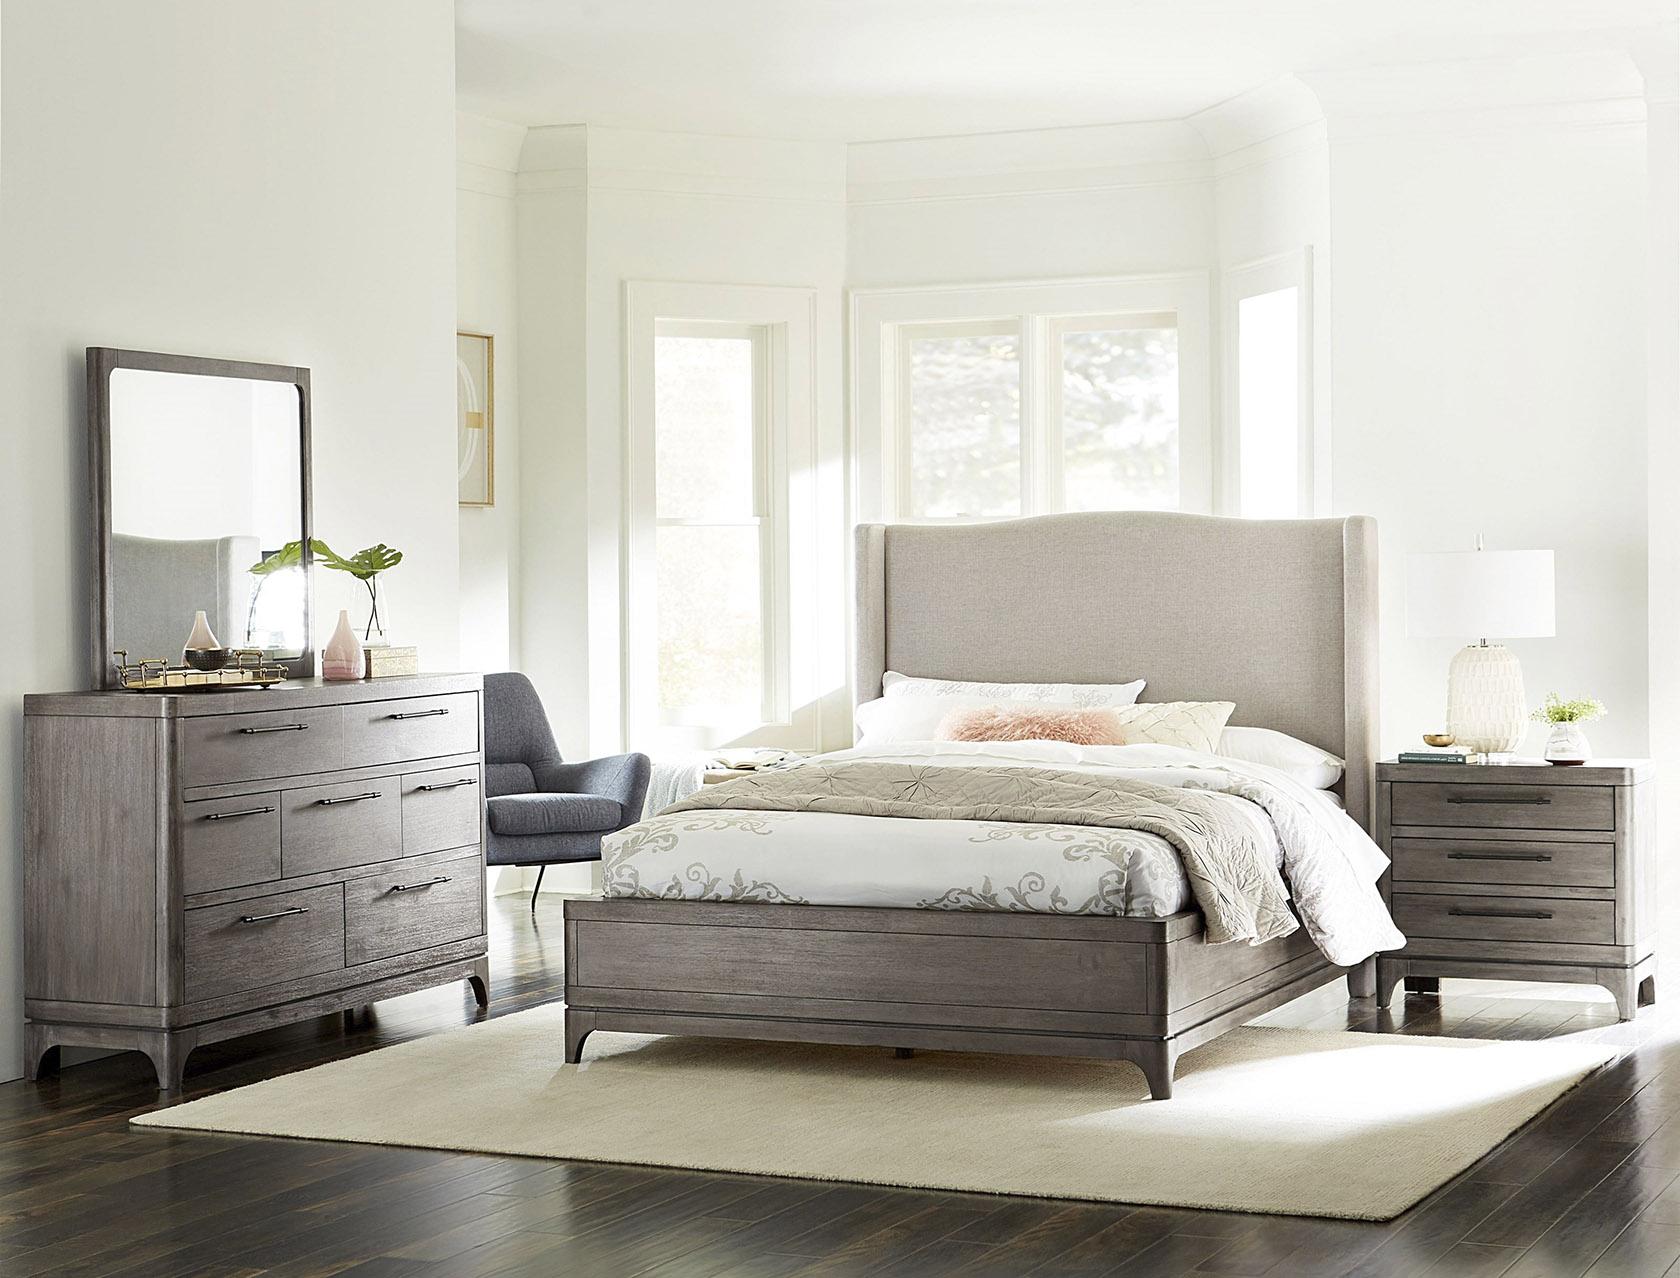 

    
2KS3A5 Modus Furniture Platform Bed
